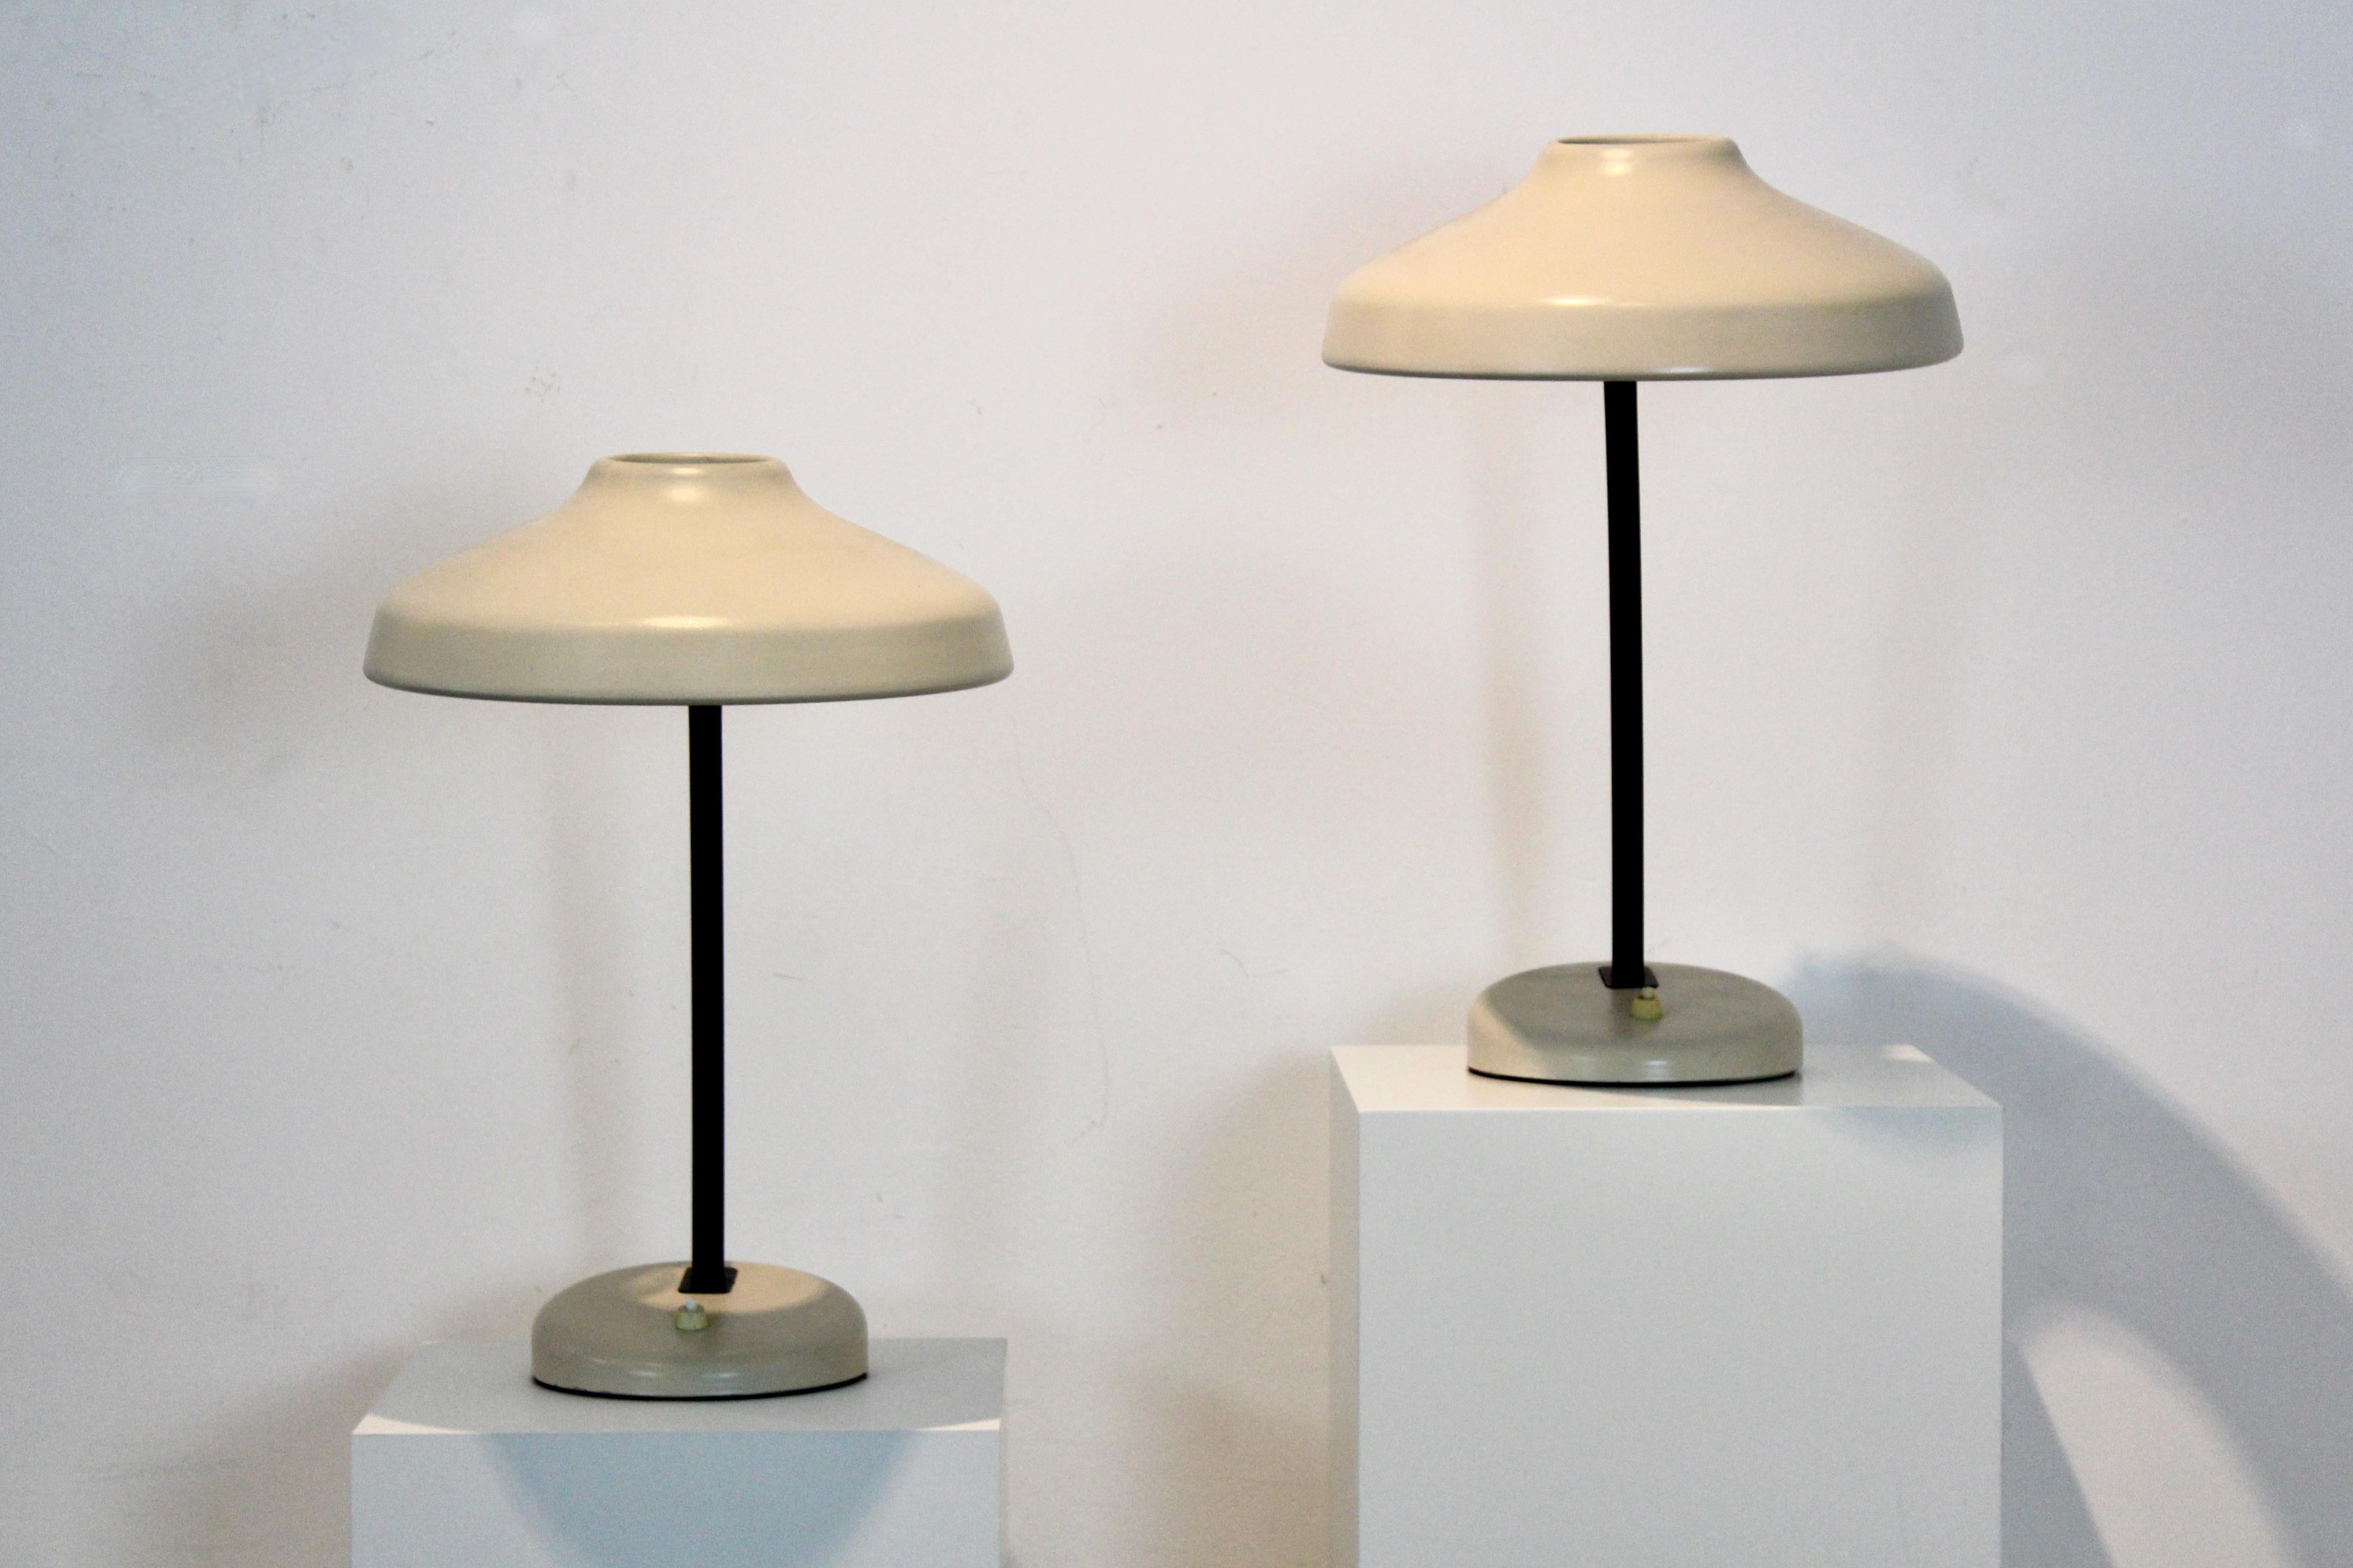 Swedish Charming Set of Adjustable Hemi Desk or Table Lamps, Sweden, 1960s For Sale